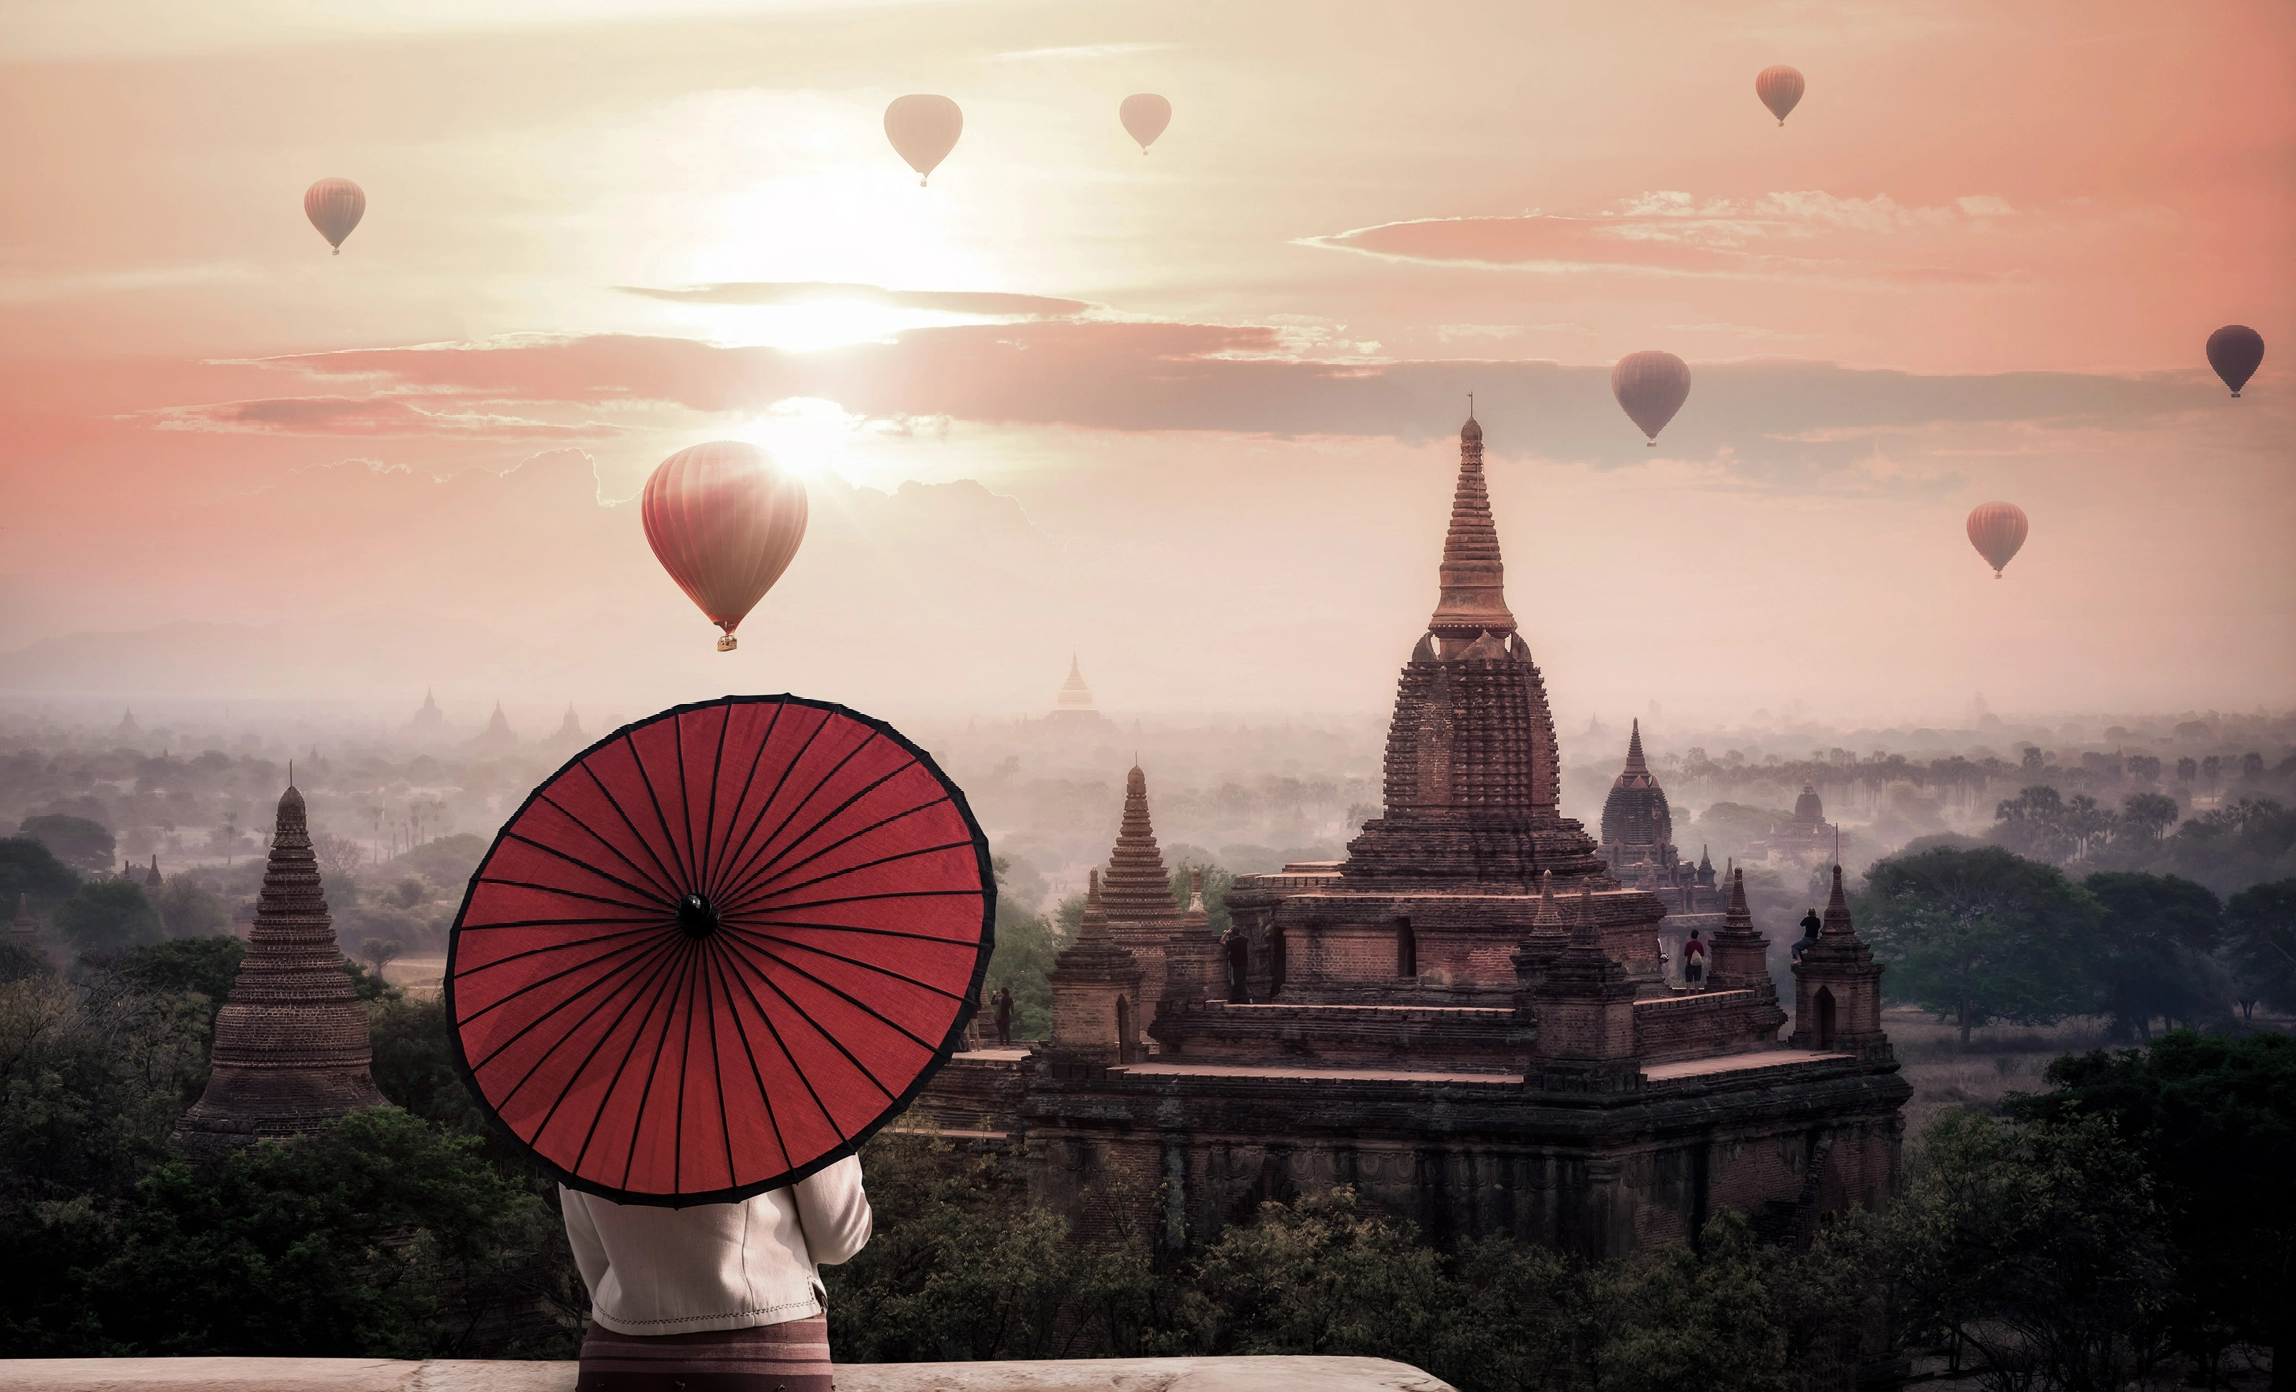 #BradescoAcessivel #ParaTodoMundoVer: uma pessoa segura um guarda-sol ao estilo
          japonês, cobrindo sua cabeça, enquanto olha vários balões que sobrevoam uma cidade
          asiática cheia de torres. Ao fundo, vemos um céu rosado com as nuvens cobrindo o
          sol.